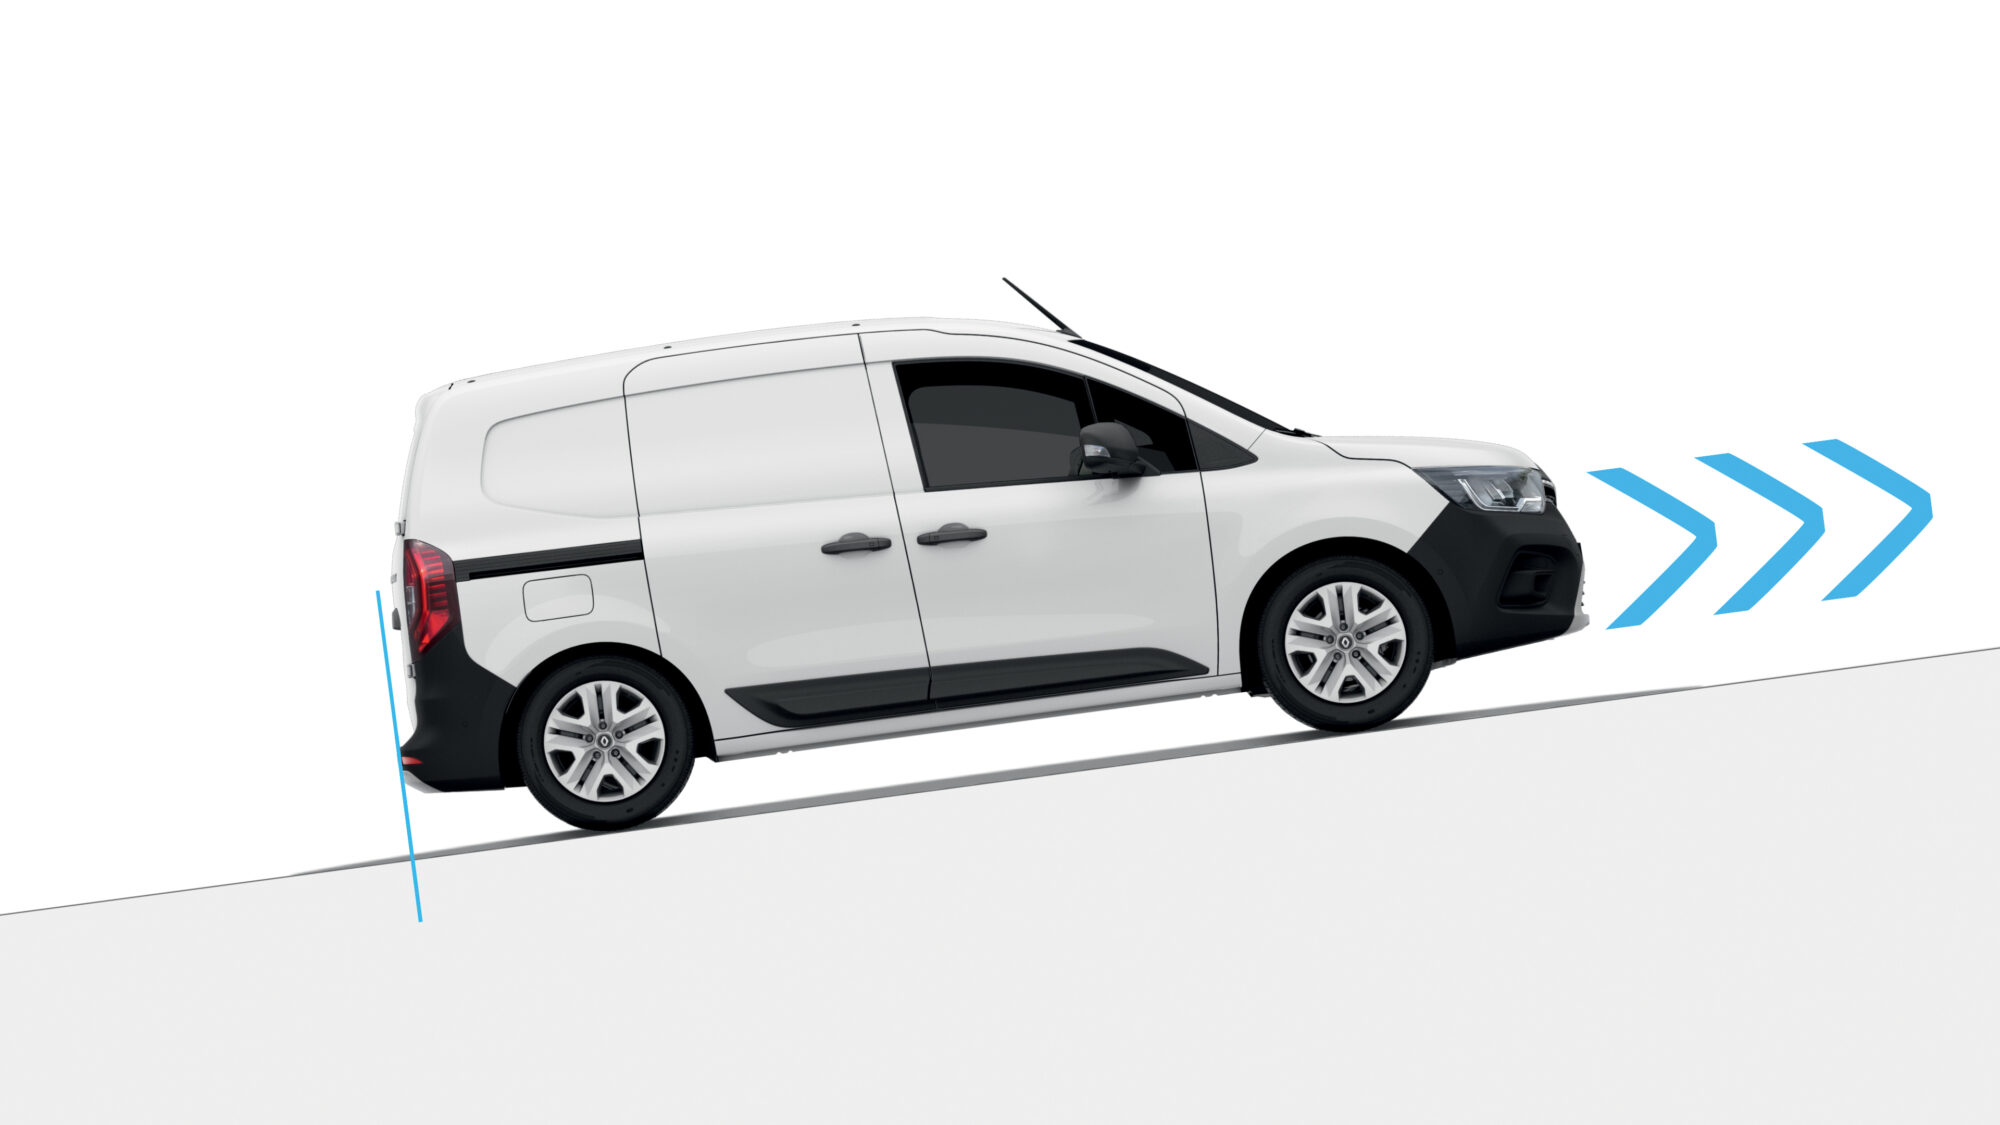 2021 - Nouveau Renault Kangoo Van - Illustrations techniques